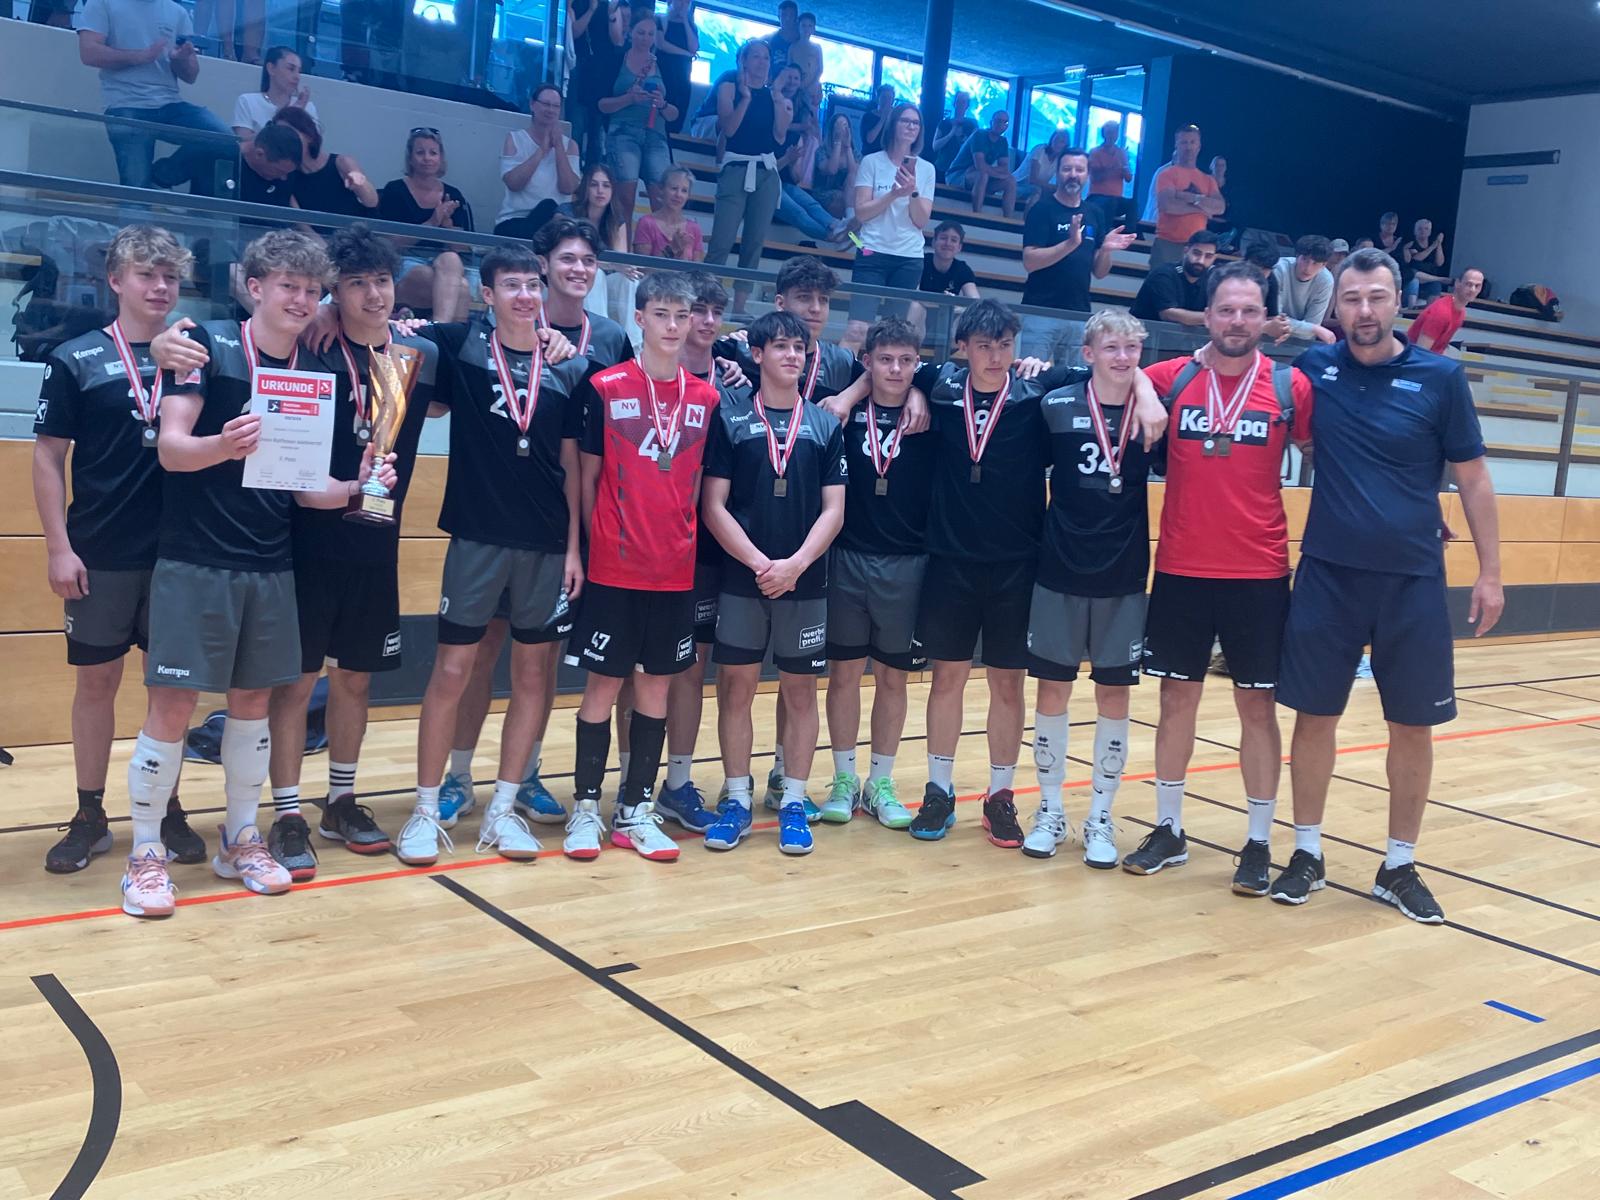 U18 Burschen gewinnen sensationell Bronze bei der ÖMS in Innsbruck